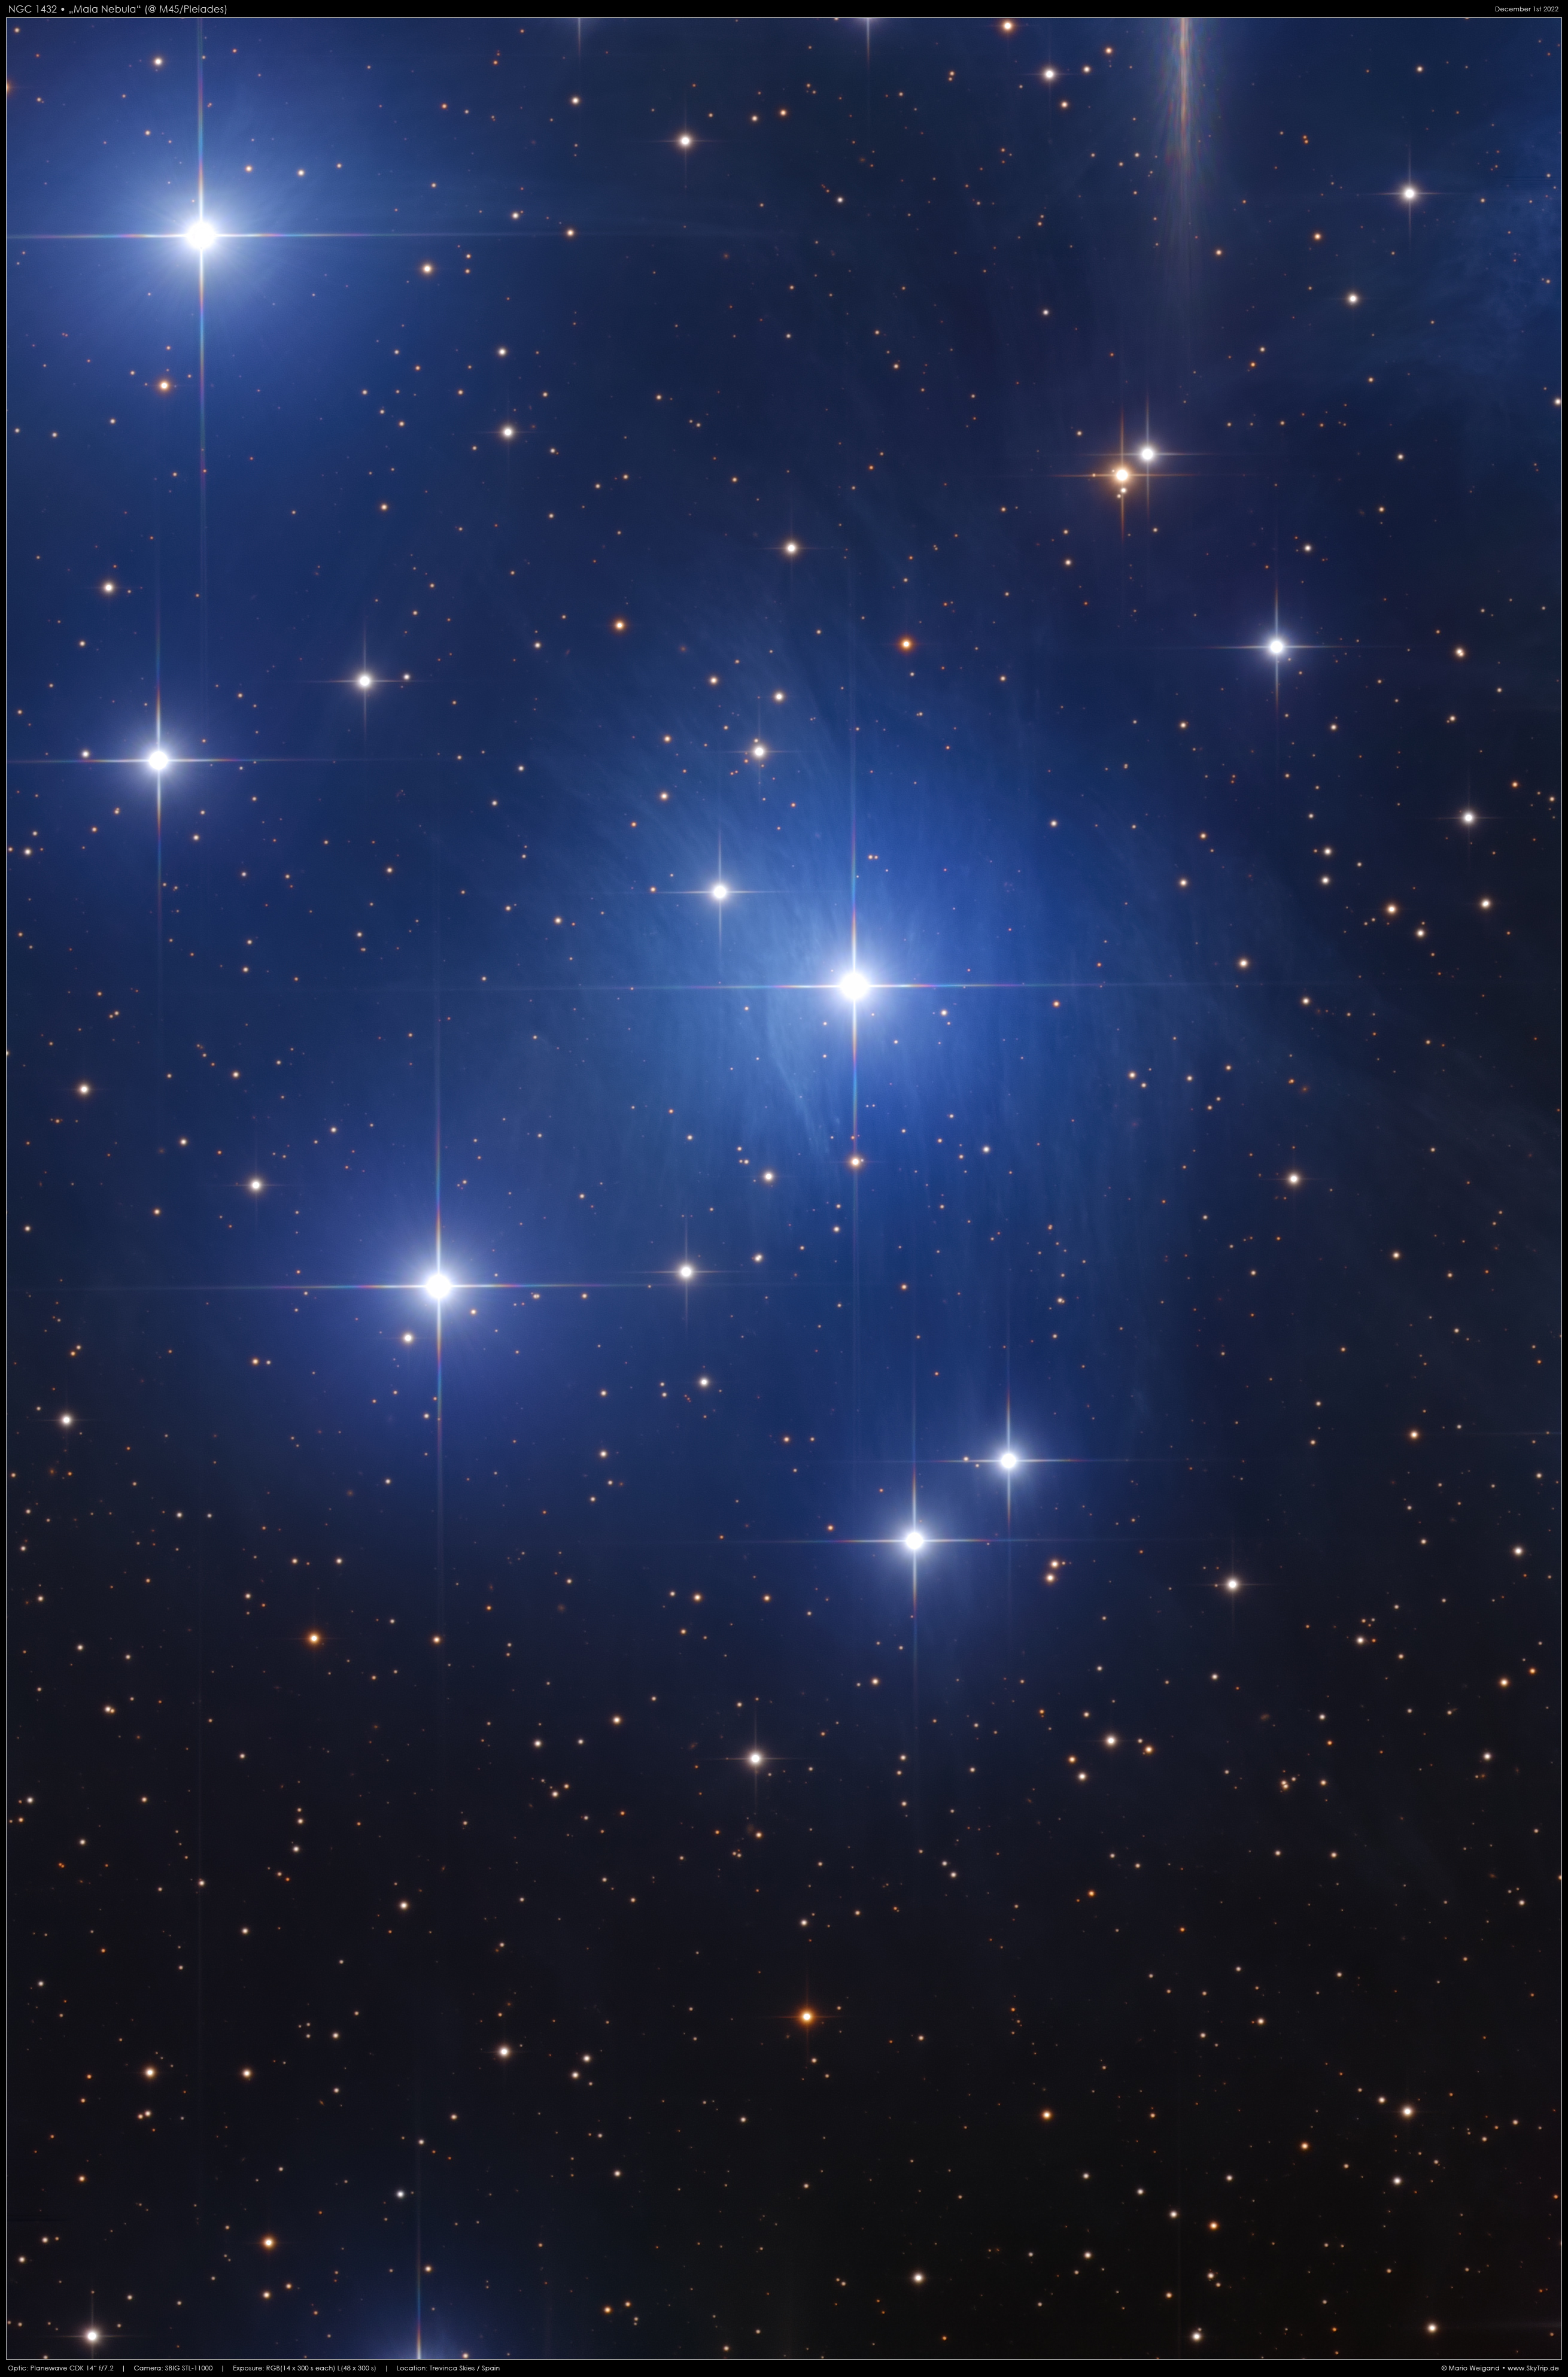 NGC 1432 - Majanebel in M45